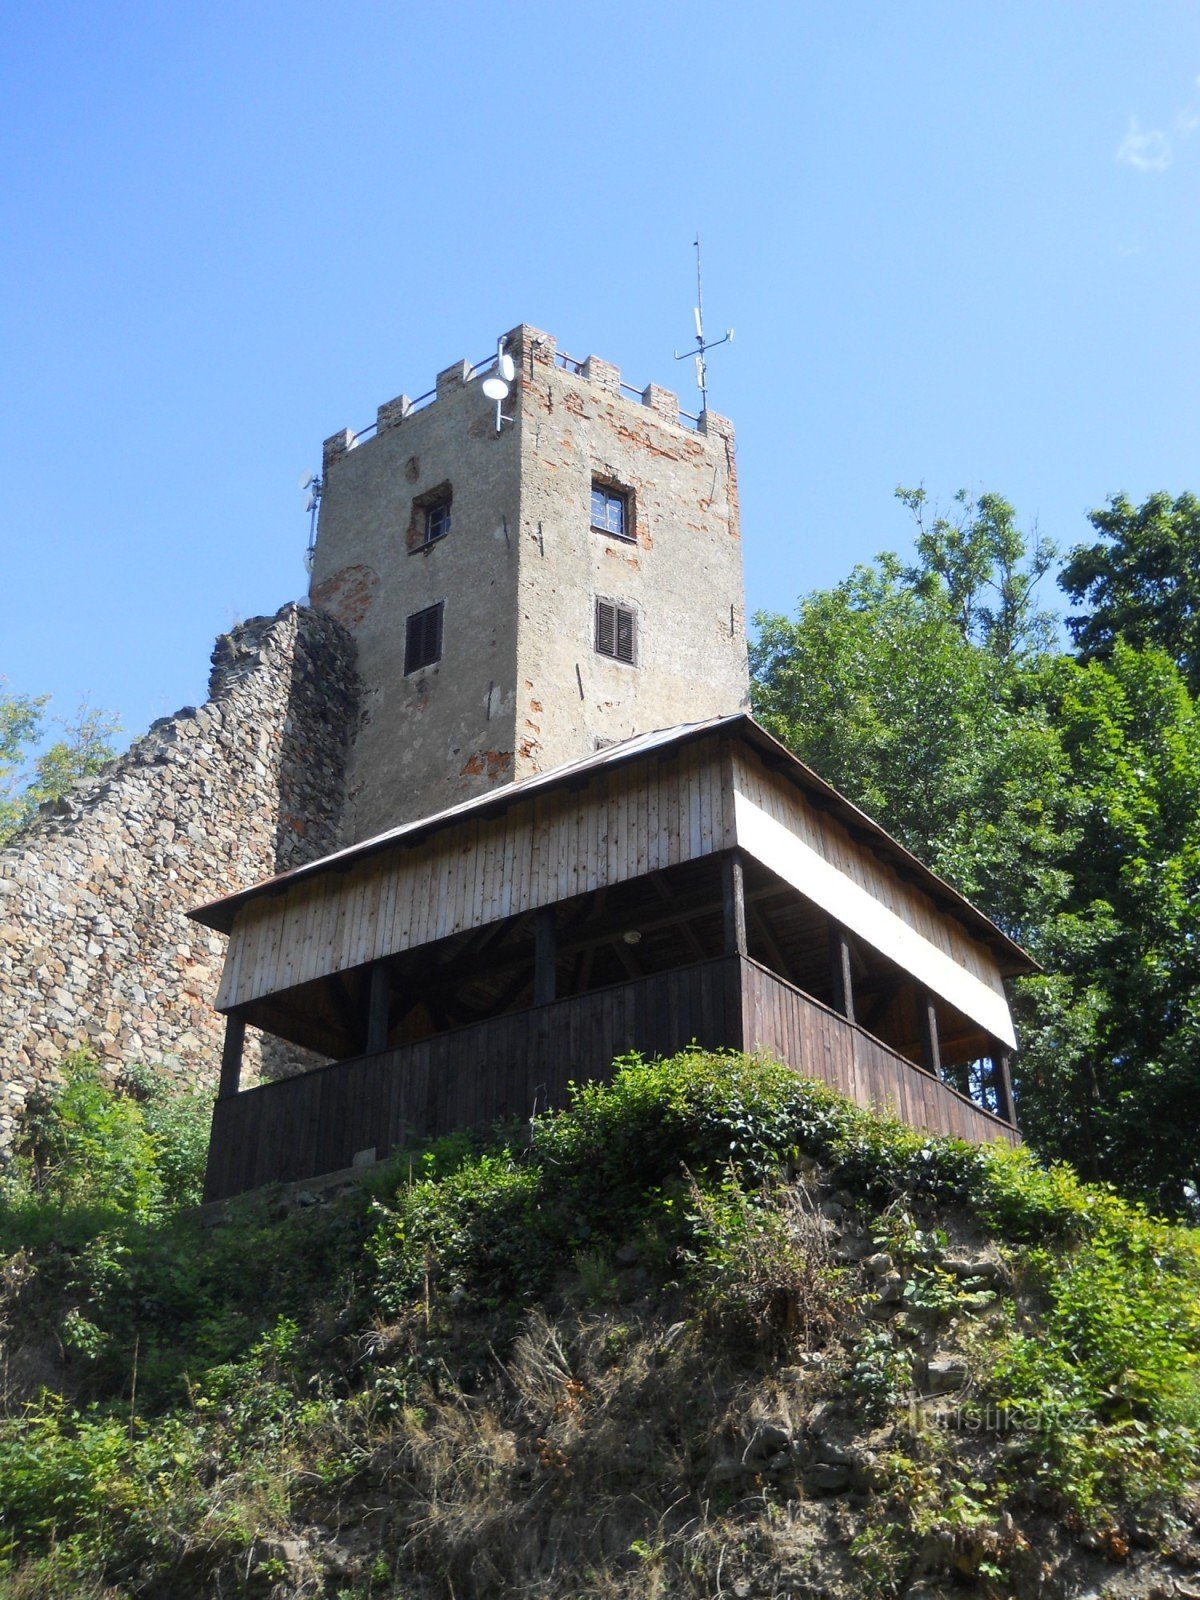 Kdyńské kører gennem to slotte, voldgrave og et udsigtstårn